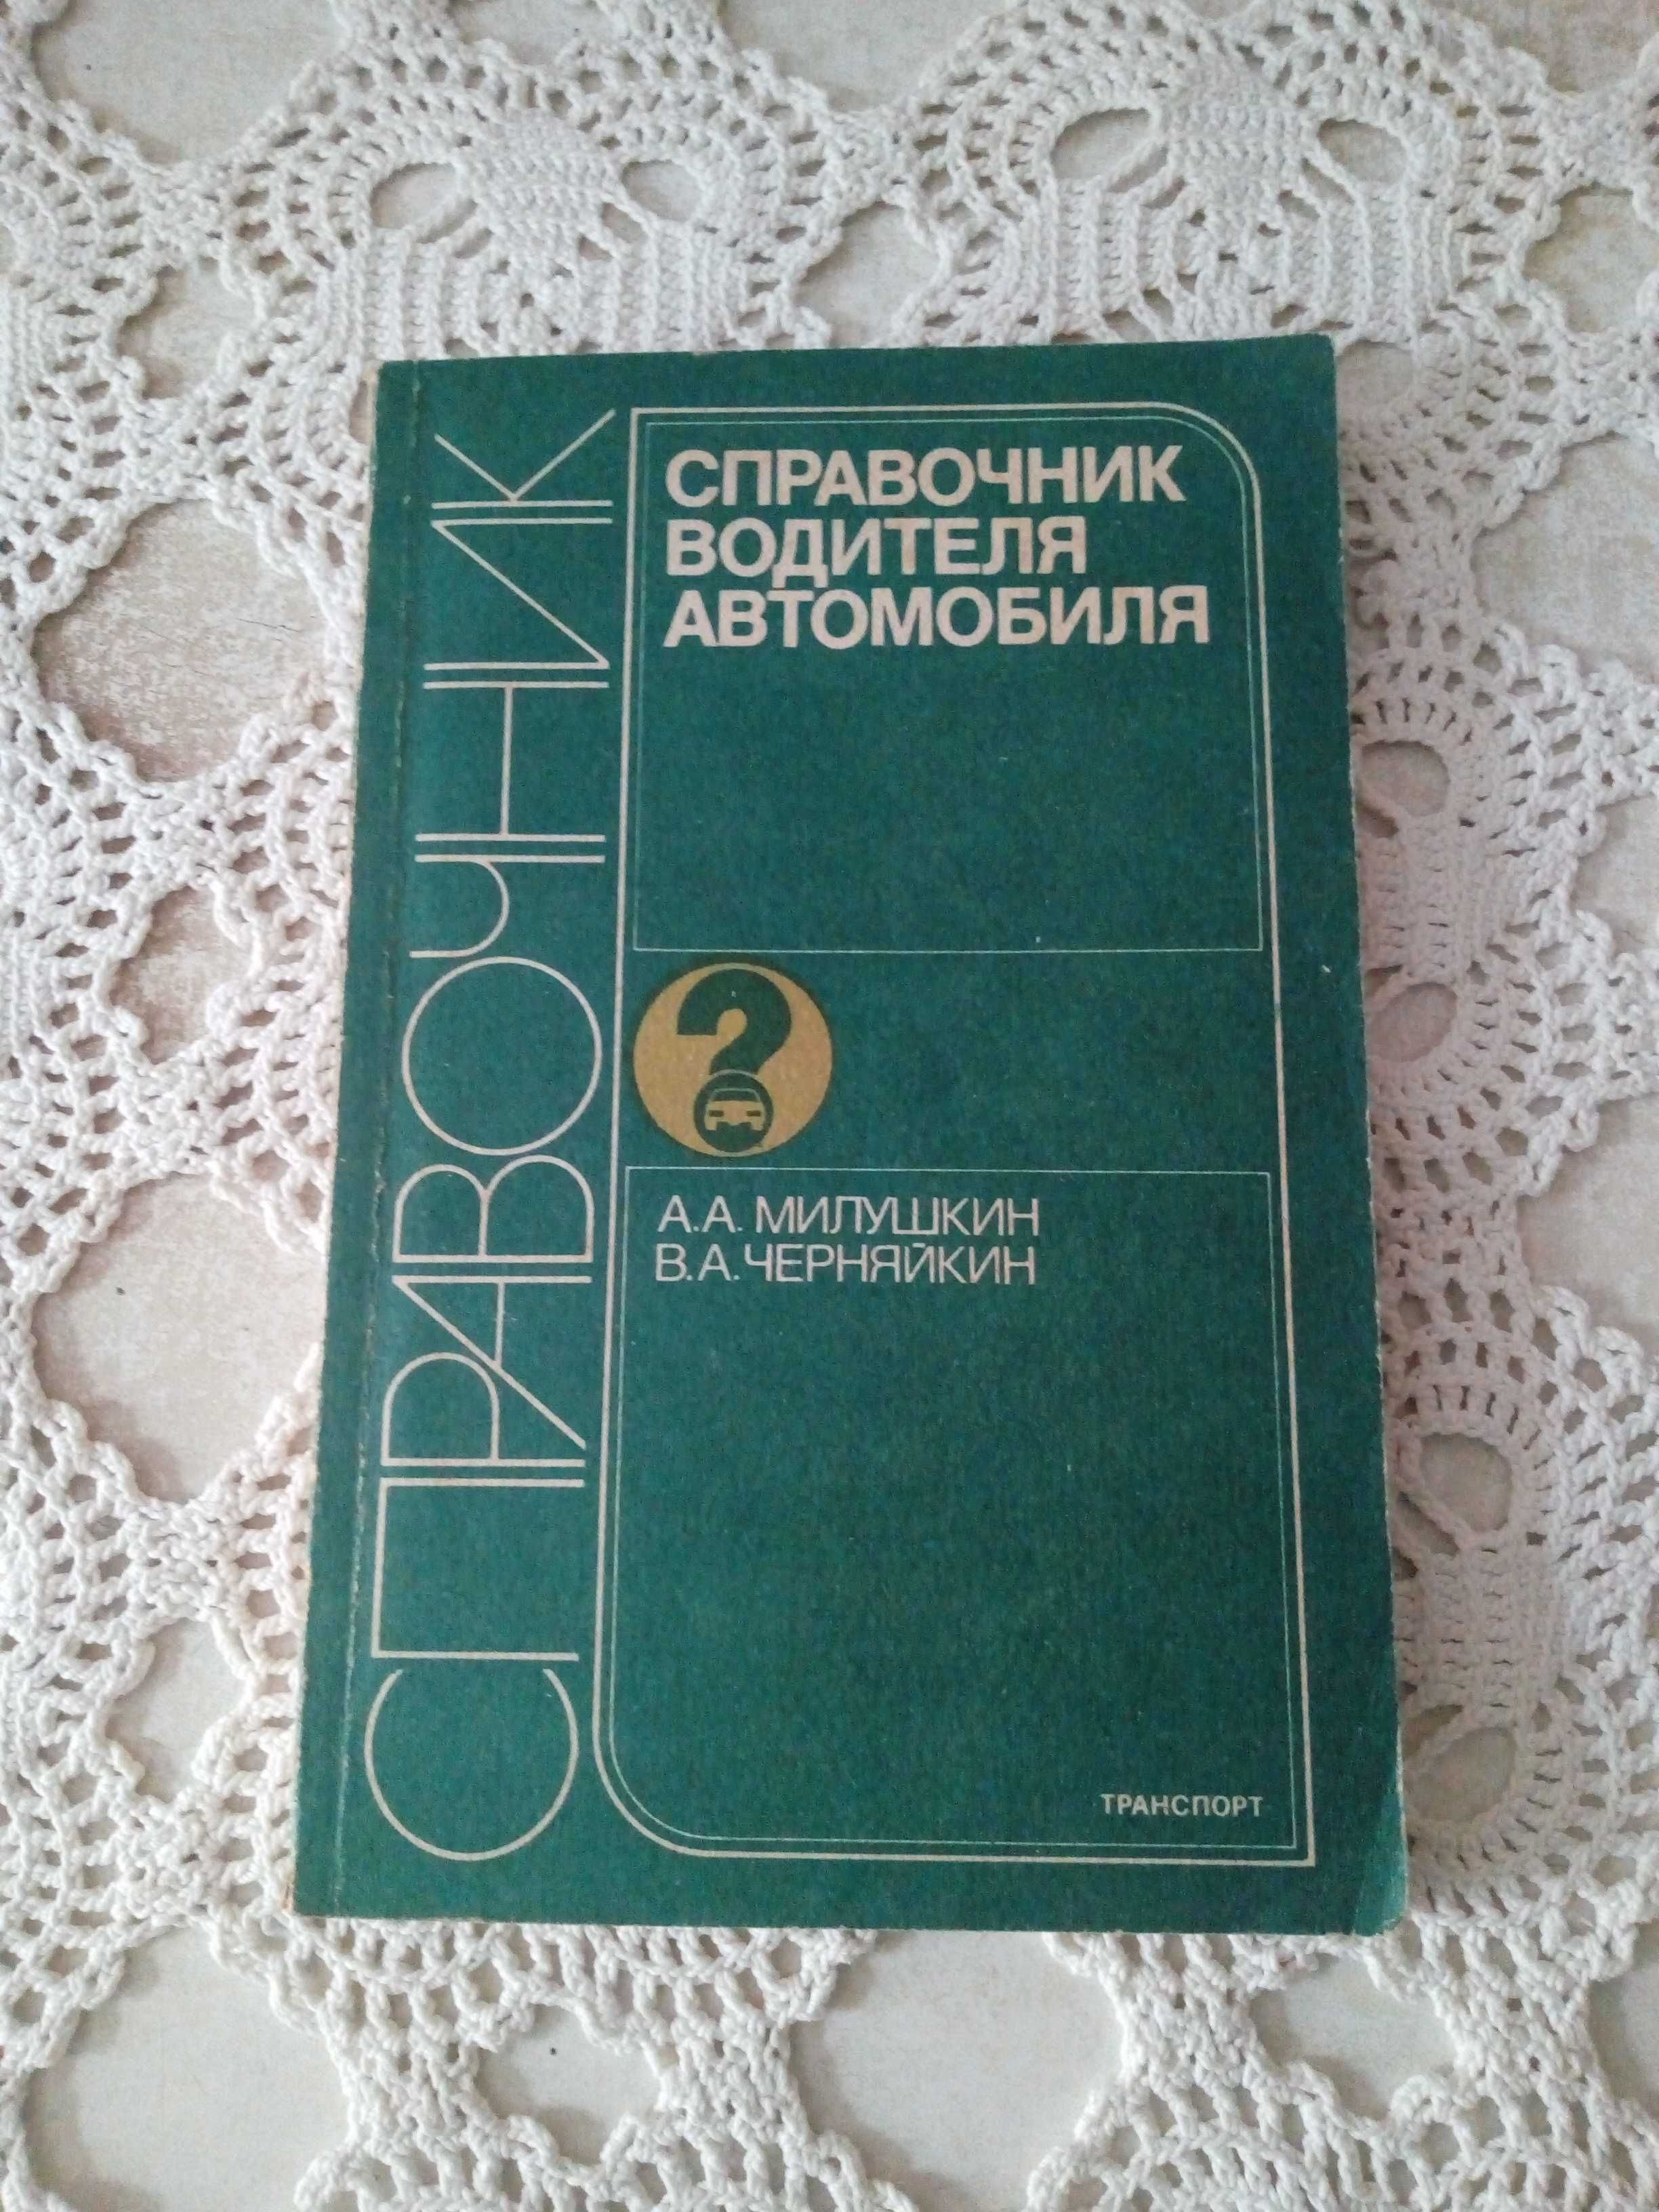 Книга "Справочник водителя автомобиля"